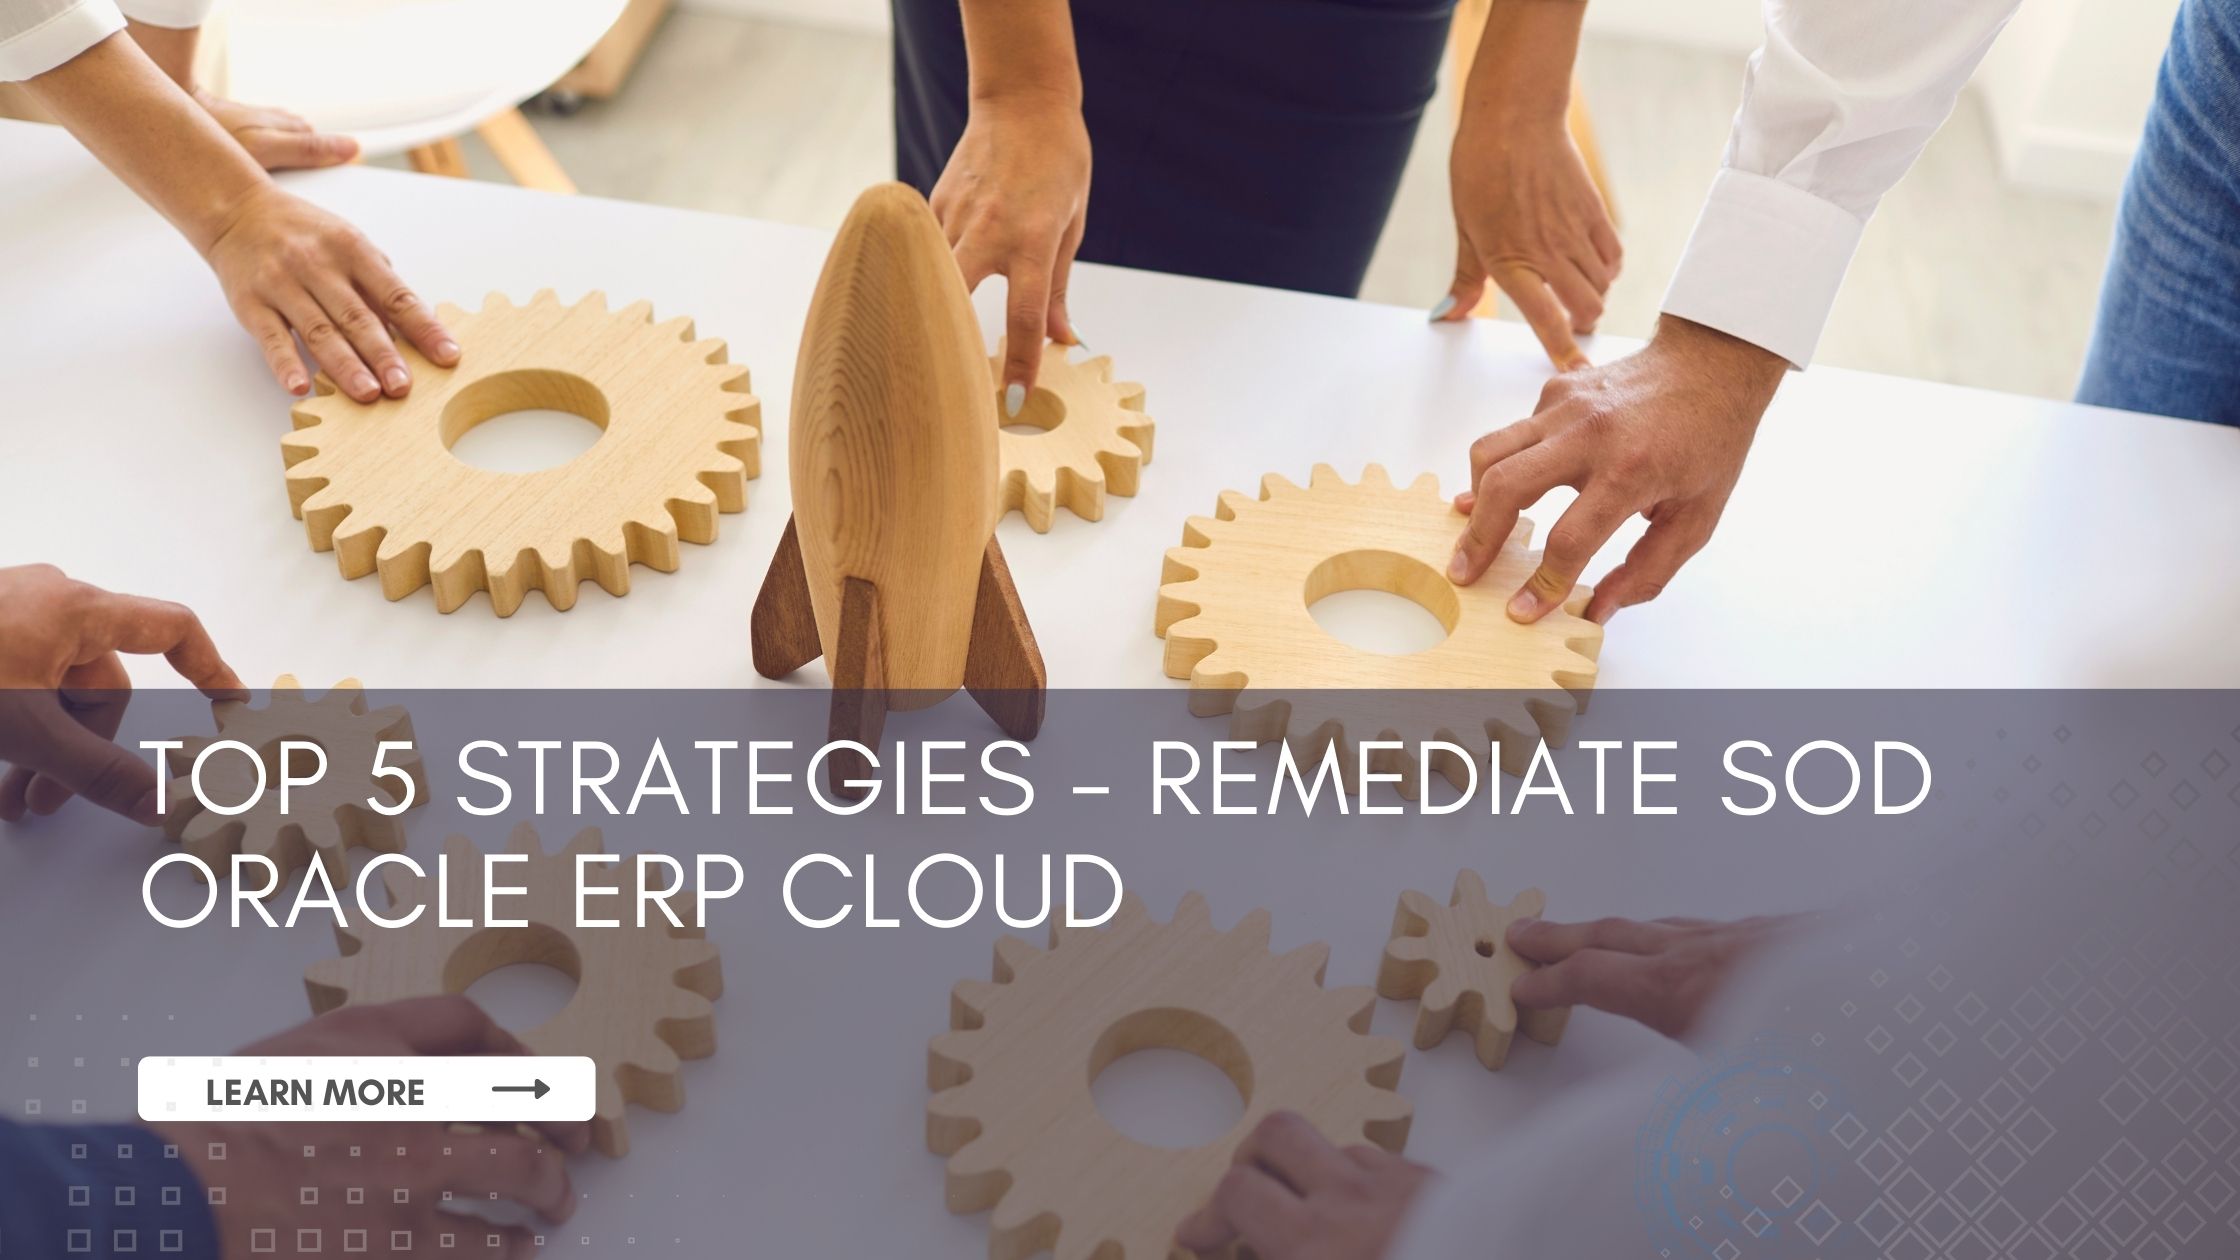 Segregation of Duties Oracle ERP Cloud